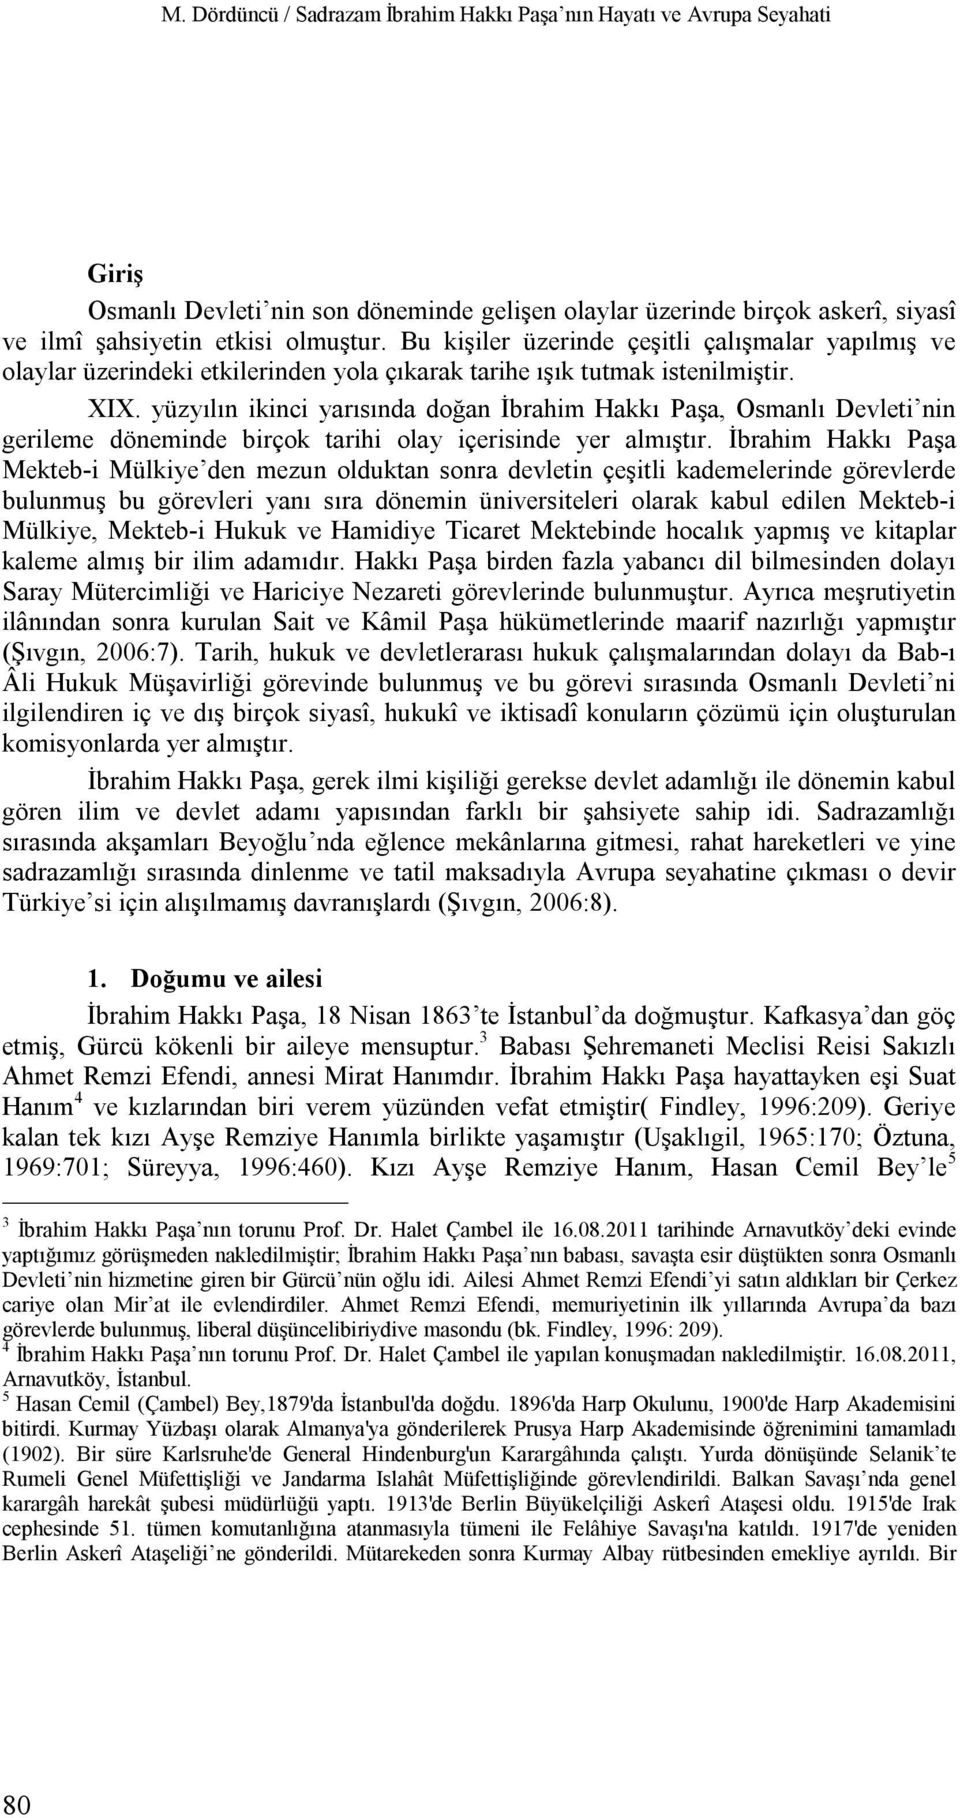 yüzyılın ikinci yarısında doğan İbrahim Hakkı Paşa, Osmanlı Devleti nin gerileme döneminde birçok tarihi olay içerisinde yer almıştır.